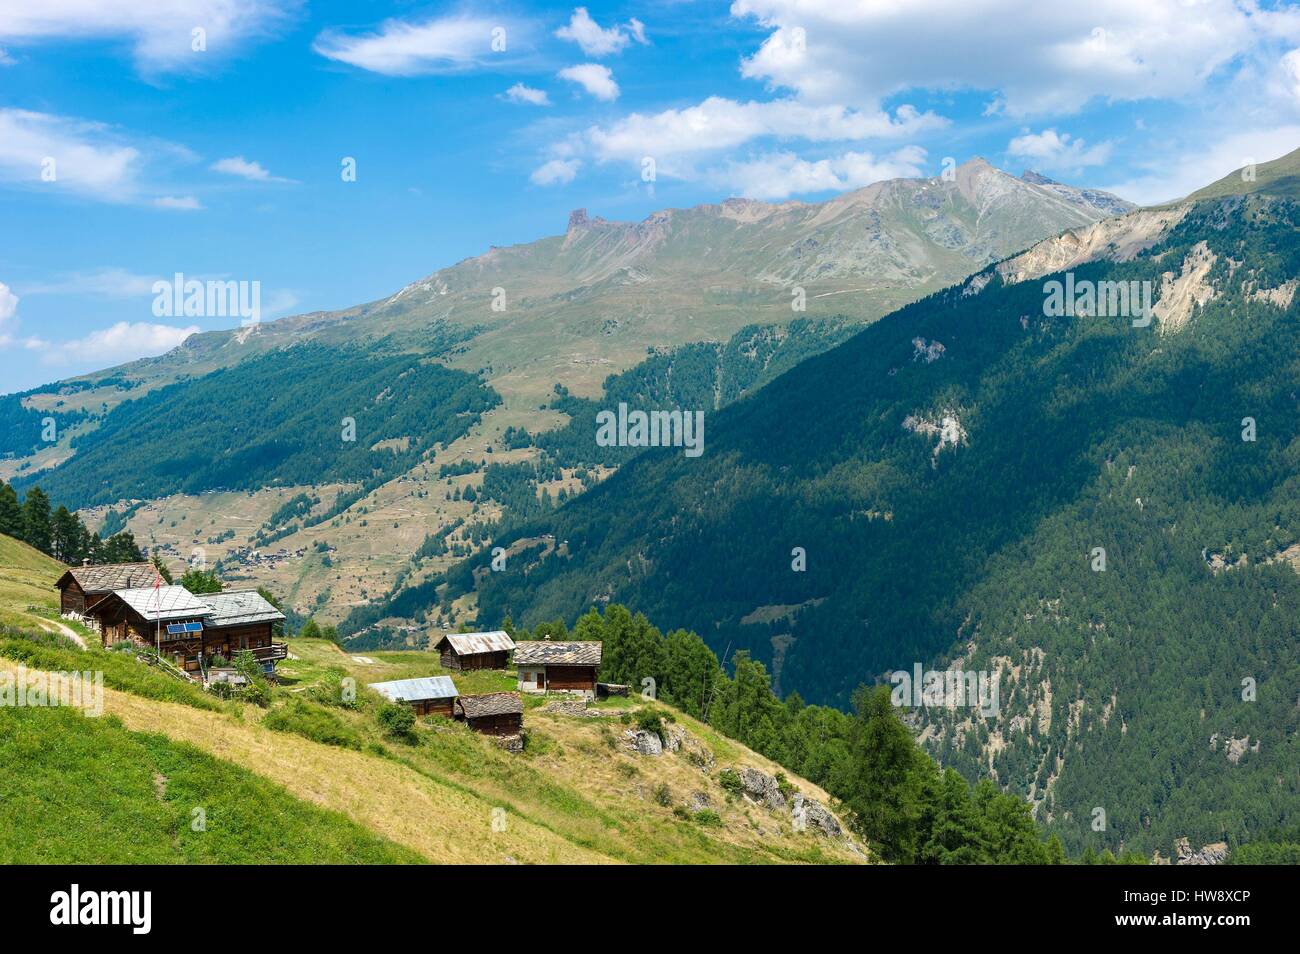 Suisse, Valais, Val d'Herens, Evolene, chalets traditionnels dans les pâturages Lana Banque D'Images